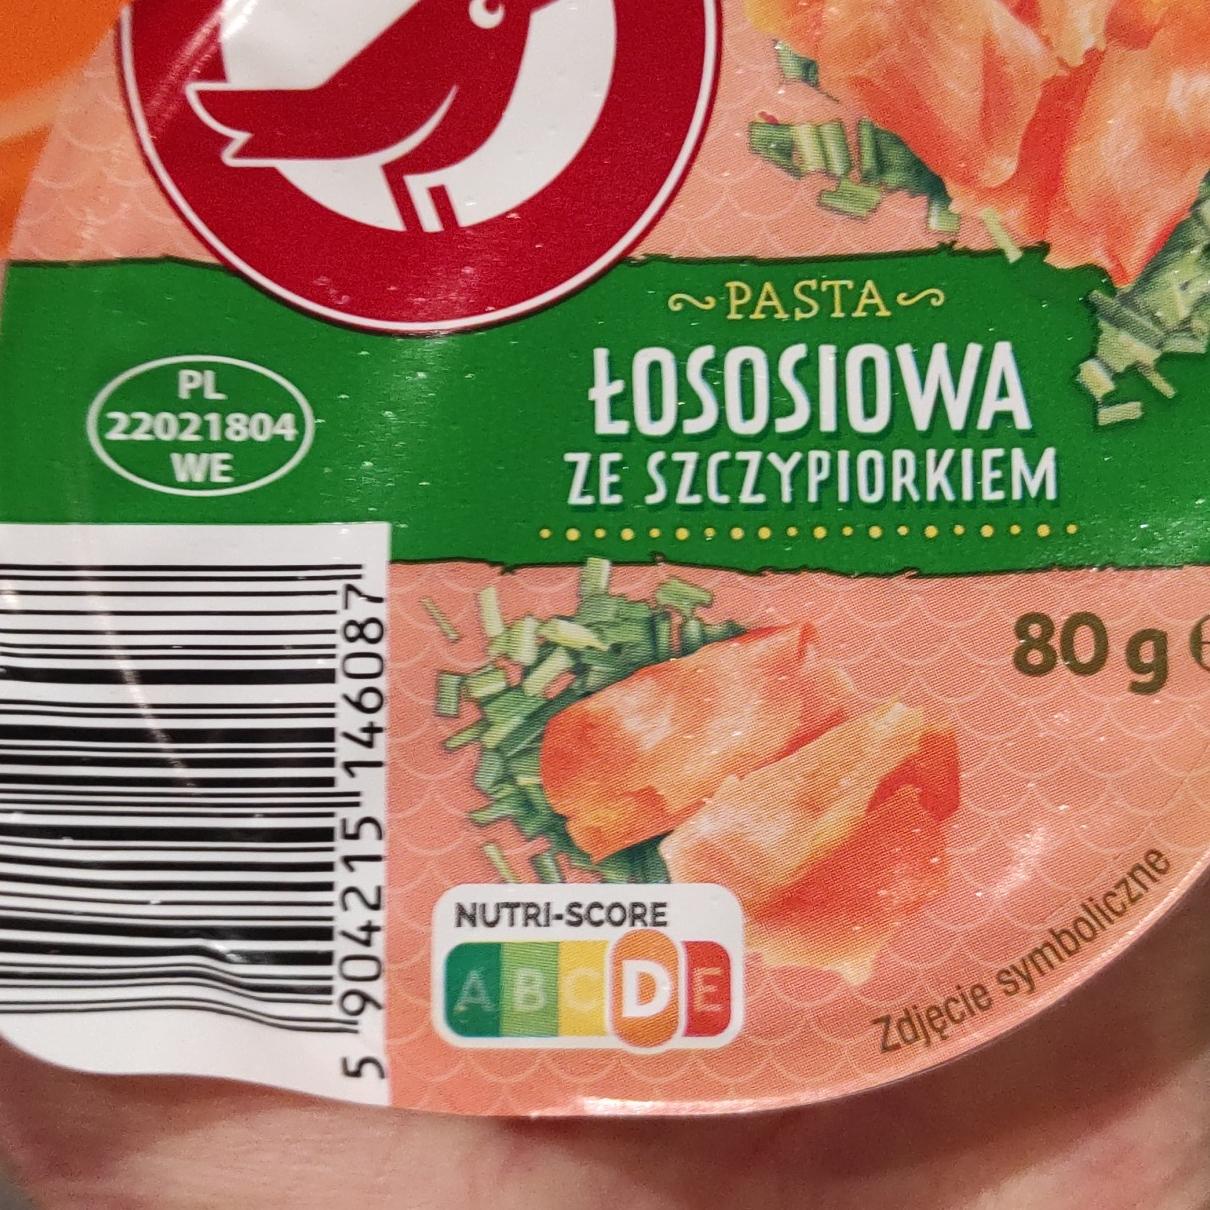 Fotografie - Pasta Lososiowa ze szczypiorkiem Auchan